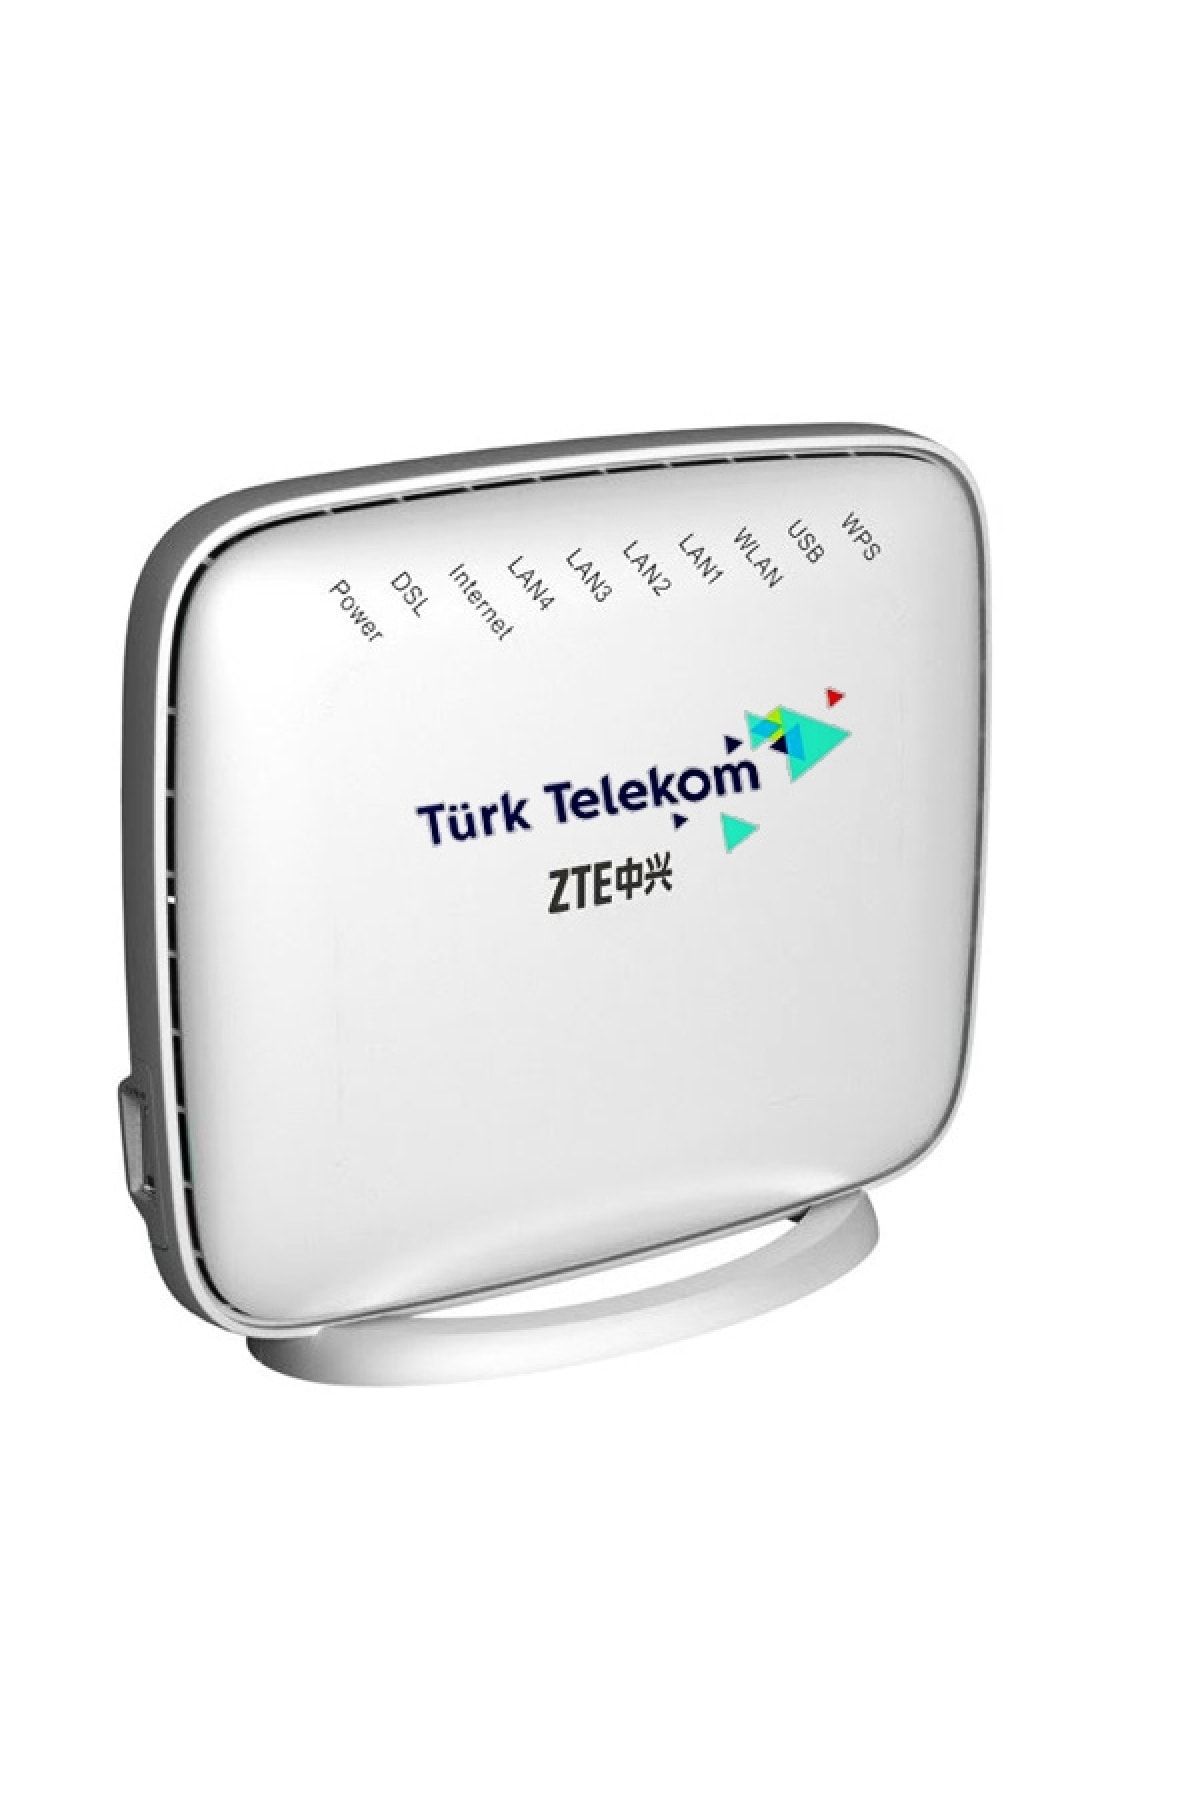 ZTE Zxhn H168n Türk Telekom 3000 Mbps Vdsl2/adsl2+ Modem Router